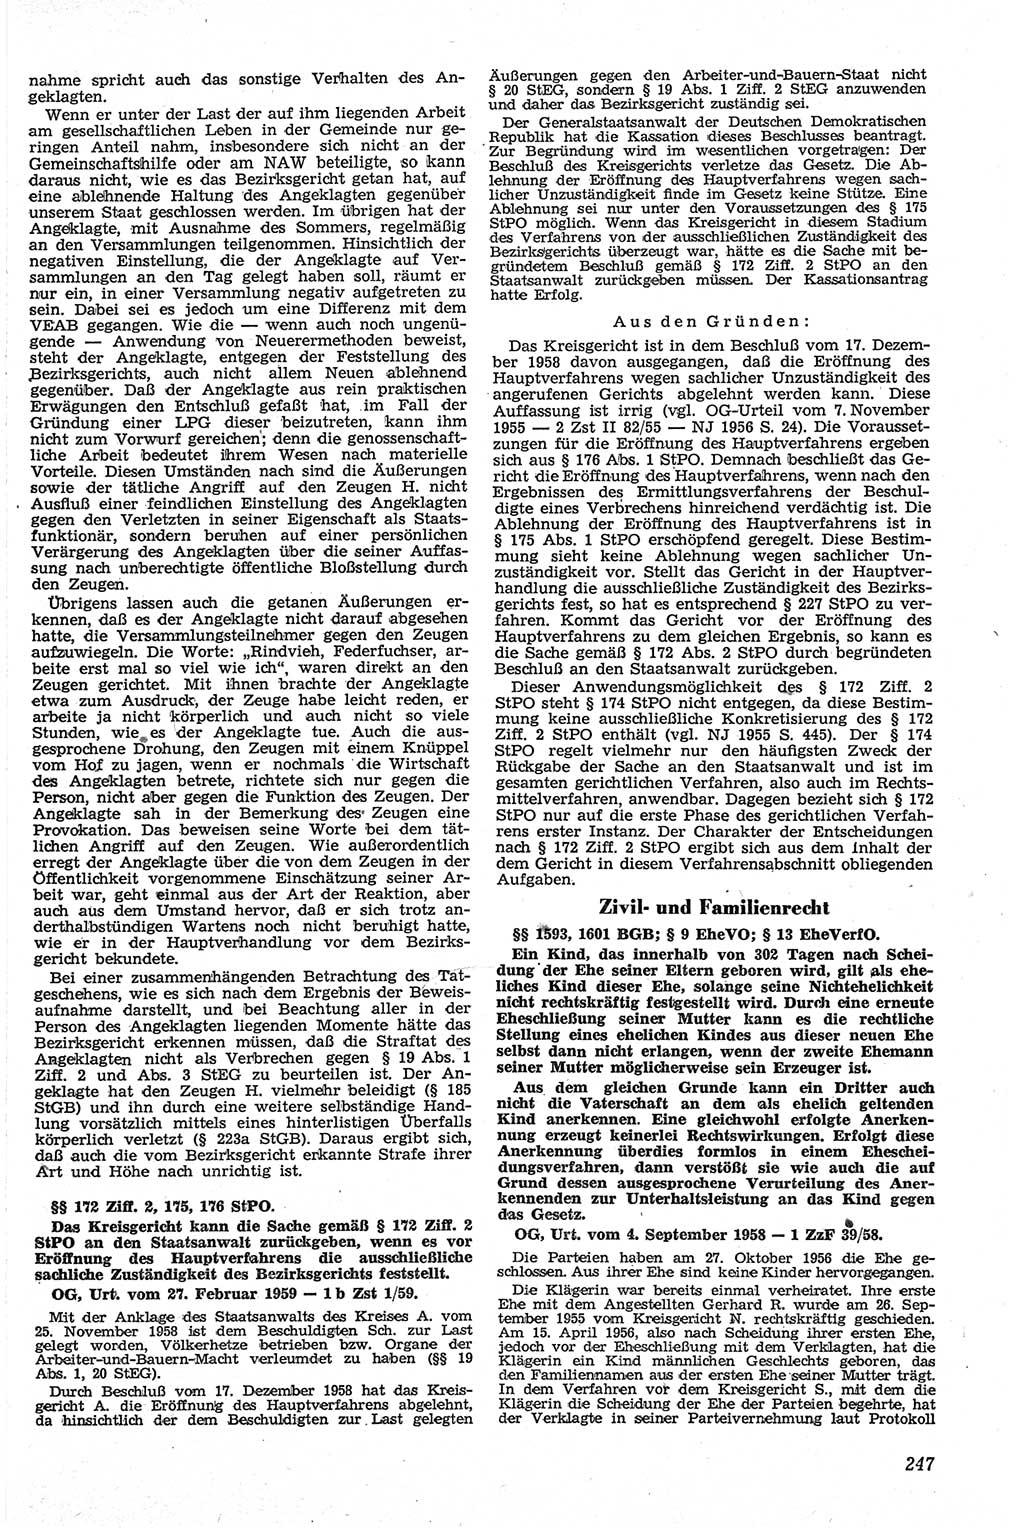 Neue Justiz (NJ), Zeitschrift für Recht und Rechtswissenschaft [Deutsche Demokratische Republik (DDR)], 13. Jahrgang 1959, Seite 247 (NJ DDR 1959, S. 247)